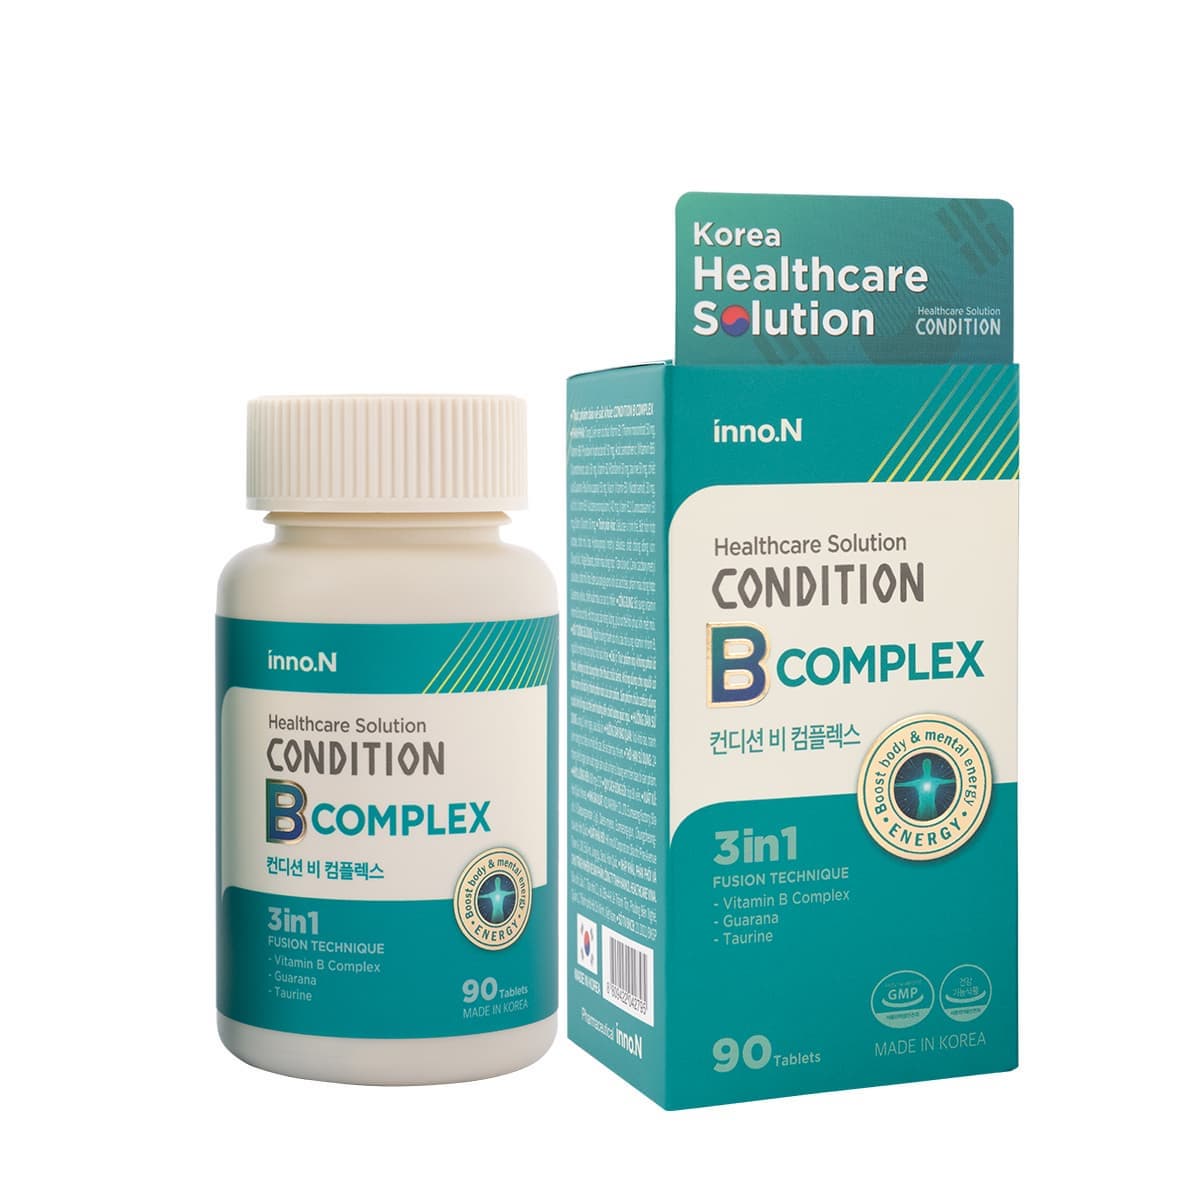 CONDITION B COMPLEX_ 8 Vitamin B complex